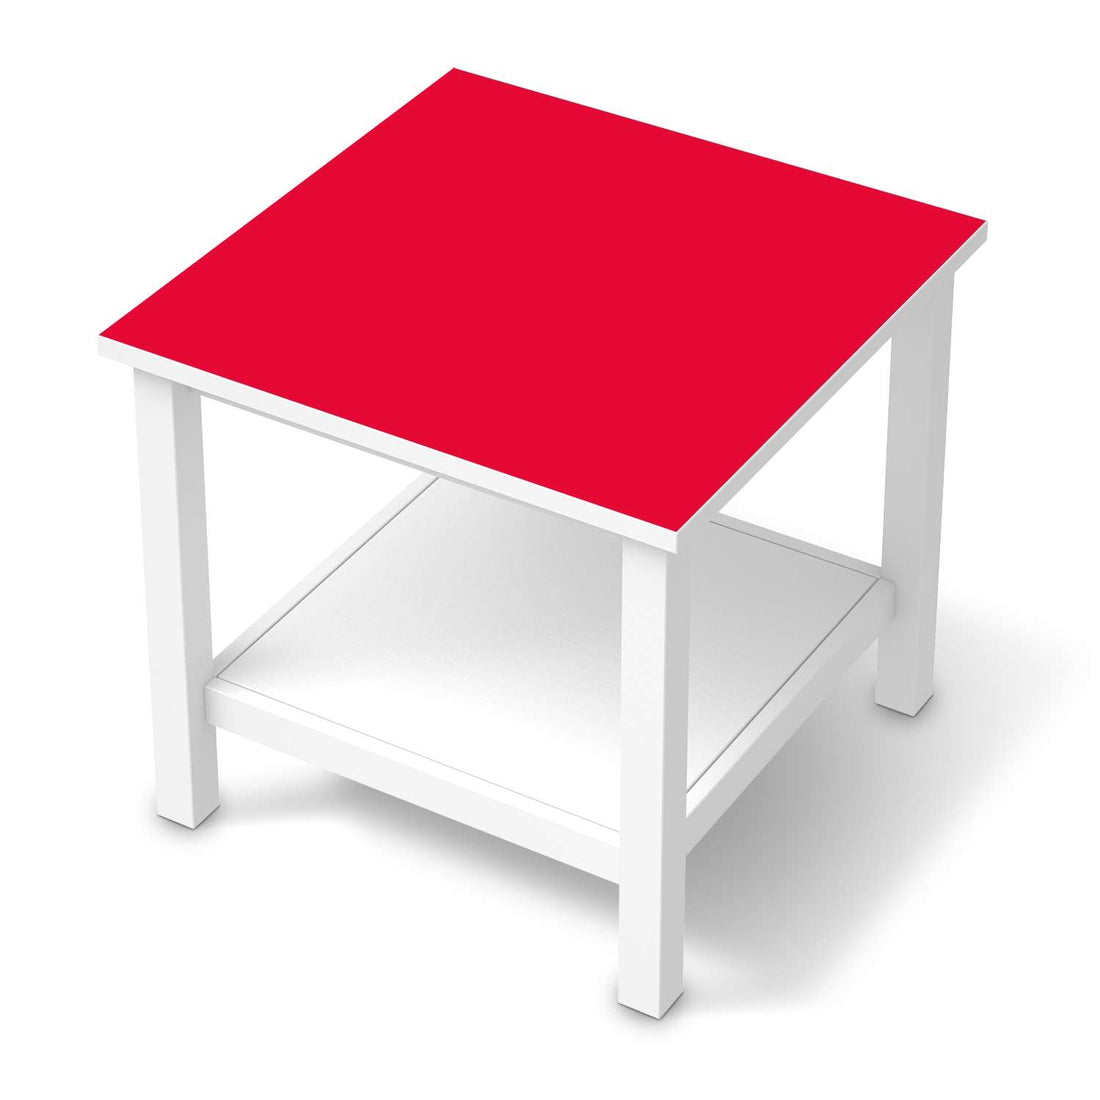 Möbel Klebefolie Rot Light - IKEA Hemnes Beistelltisch 55x55 cm  - weiss